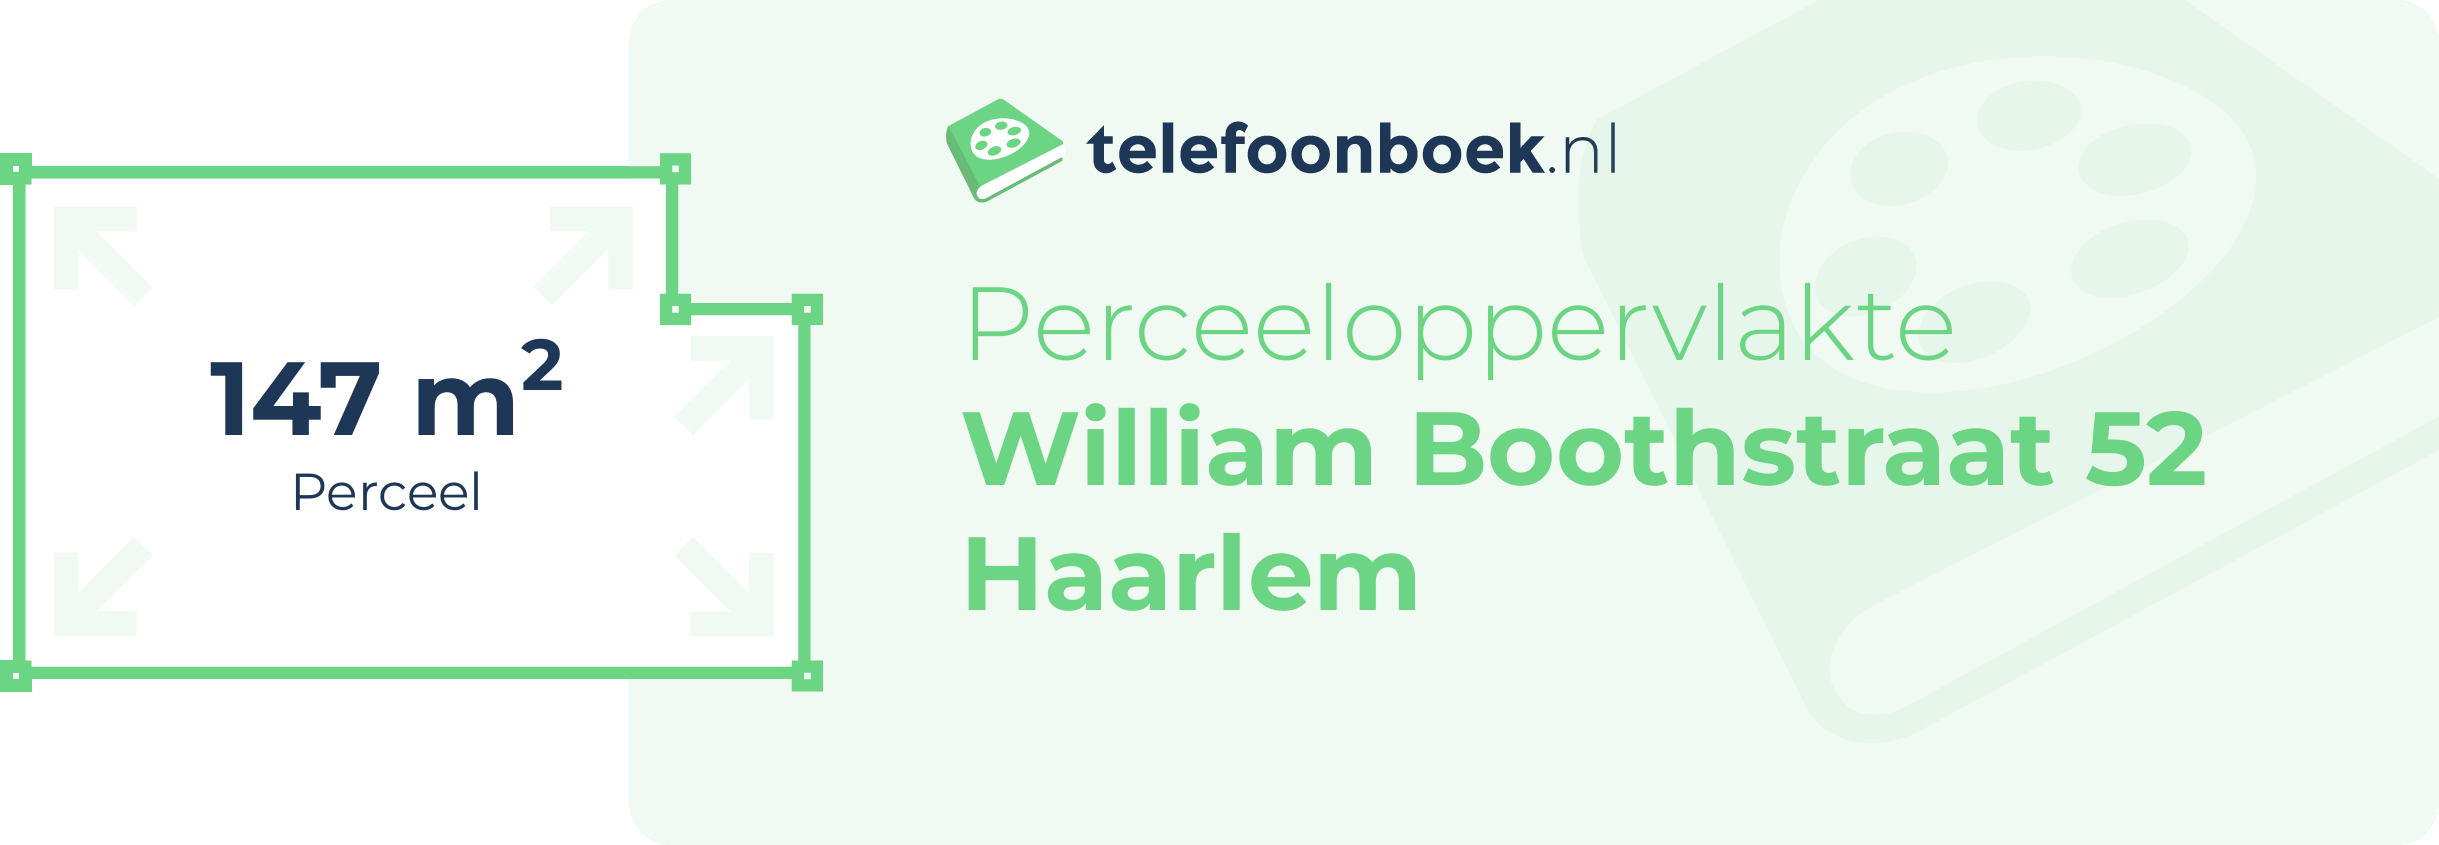 Perceeloppervlakte William Boothstraat 52 Haarlem